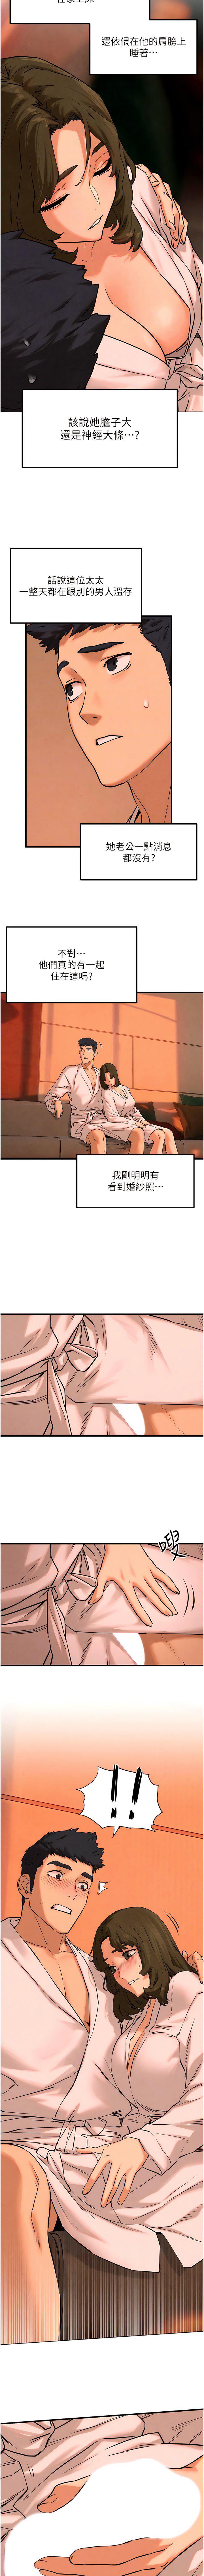 韩国污漫画 欲海交鋒 第5话 奶汁大喷发的乳交 11